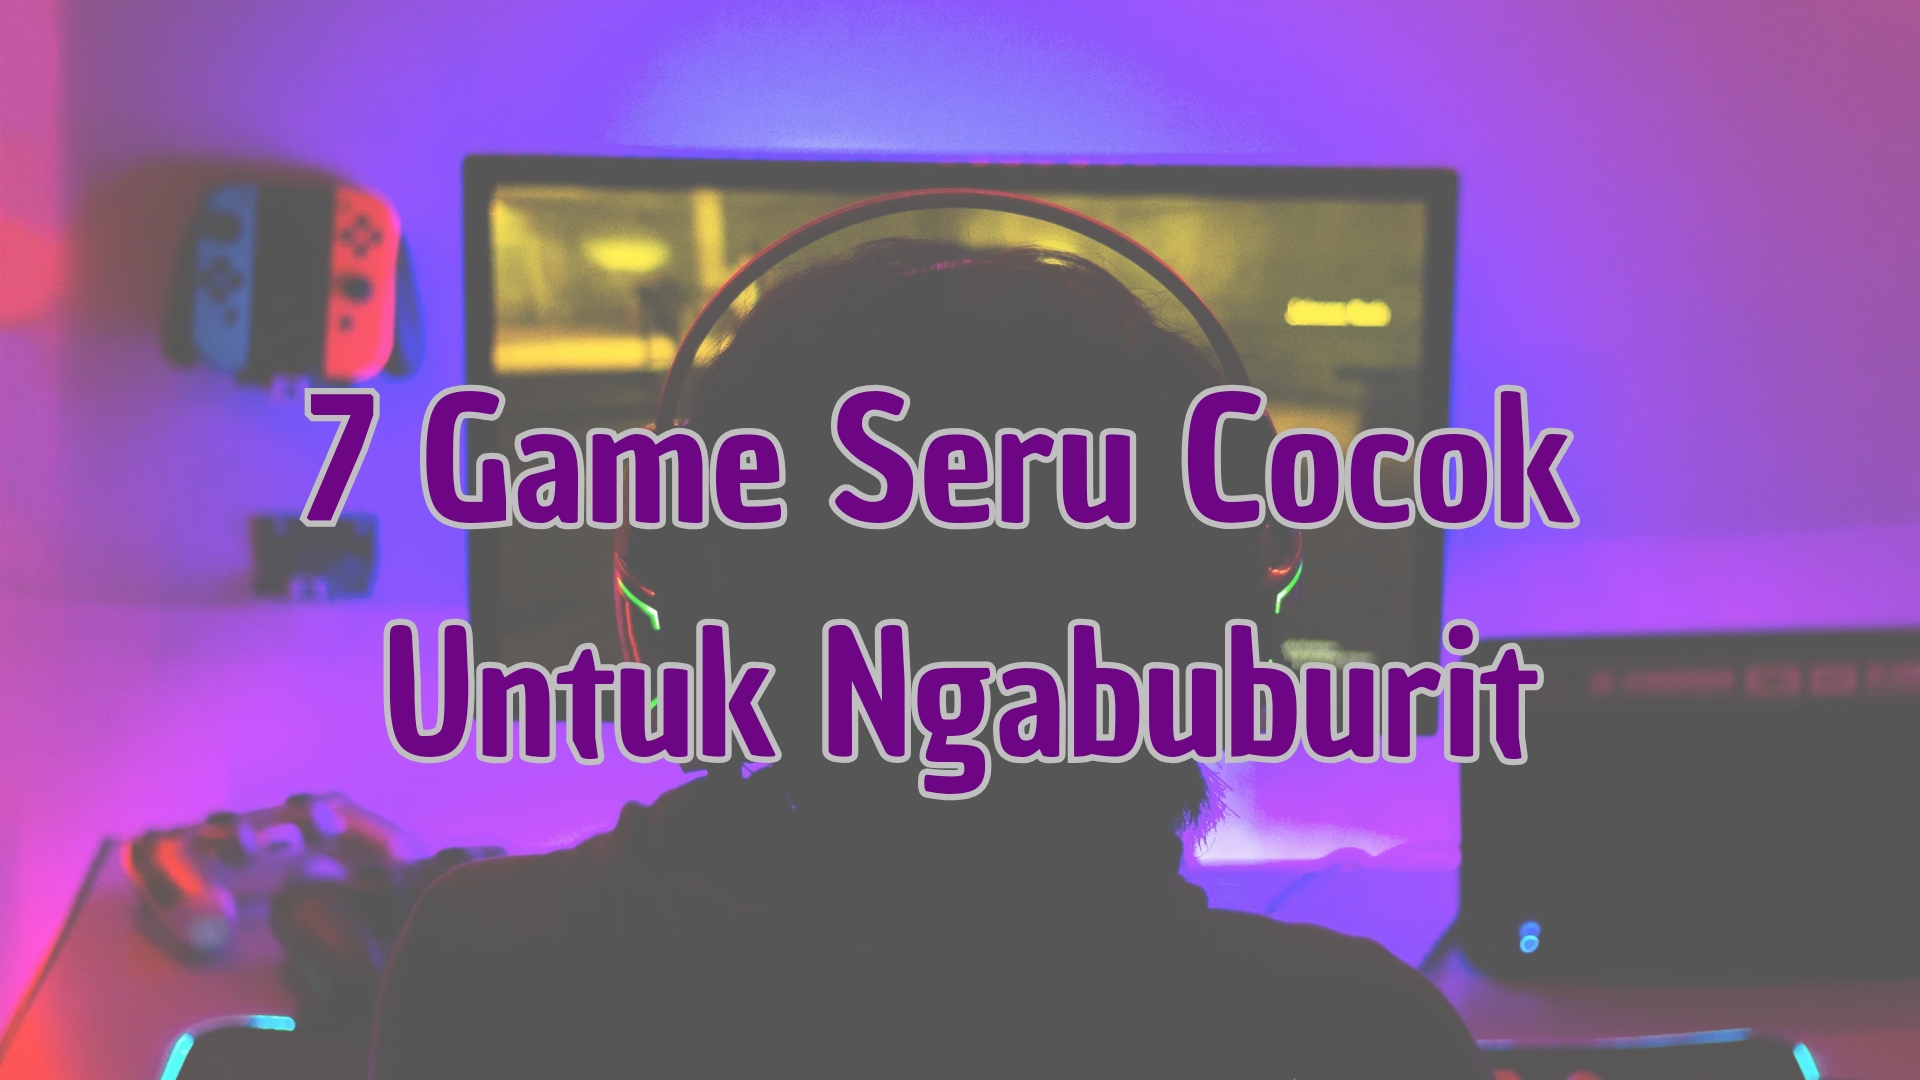 Inilah 7 Game Seru Cocok untuk Ngabuburit, Dijamin Menghibur dan Mengasyikan!